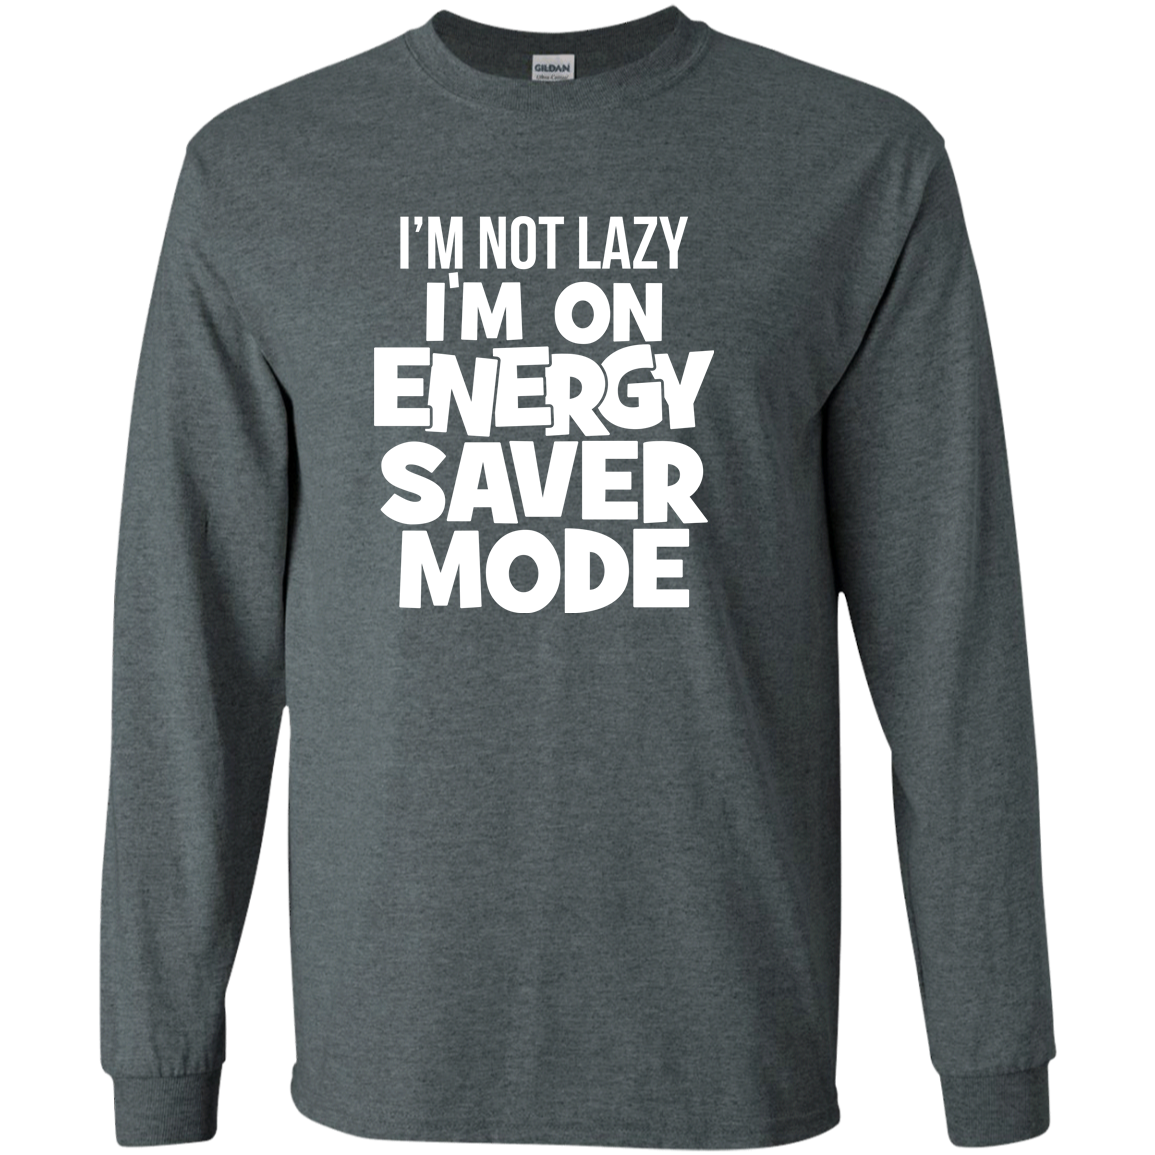 I'm Not Lazy, I'm On Energy Saver Mode!